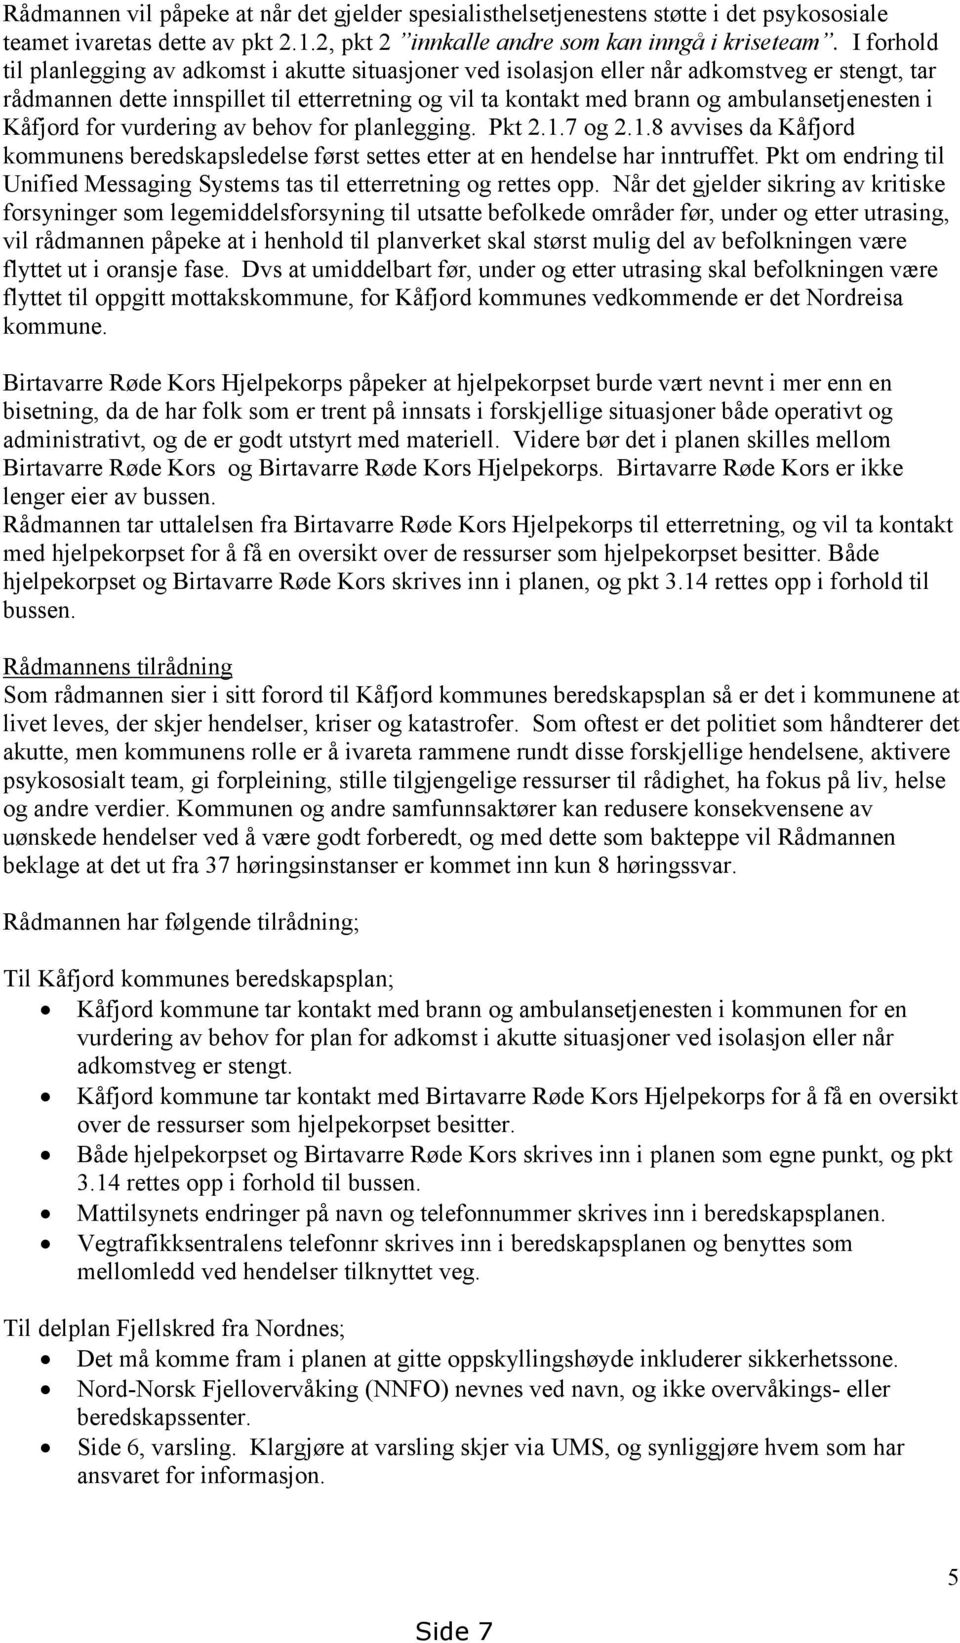 ambulansetjenesten i Kåfjord for vurdering av behov for planlegging. Pkt 2.1.7 og 2.1.8 avvises da Kåfjord kommunens beredskapsledelse først settes etter at en hendelse har inntruffet.